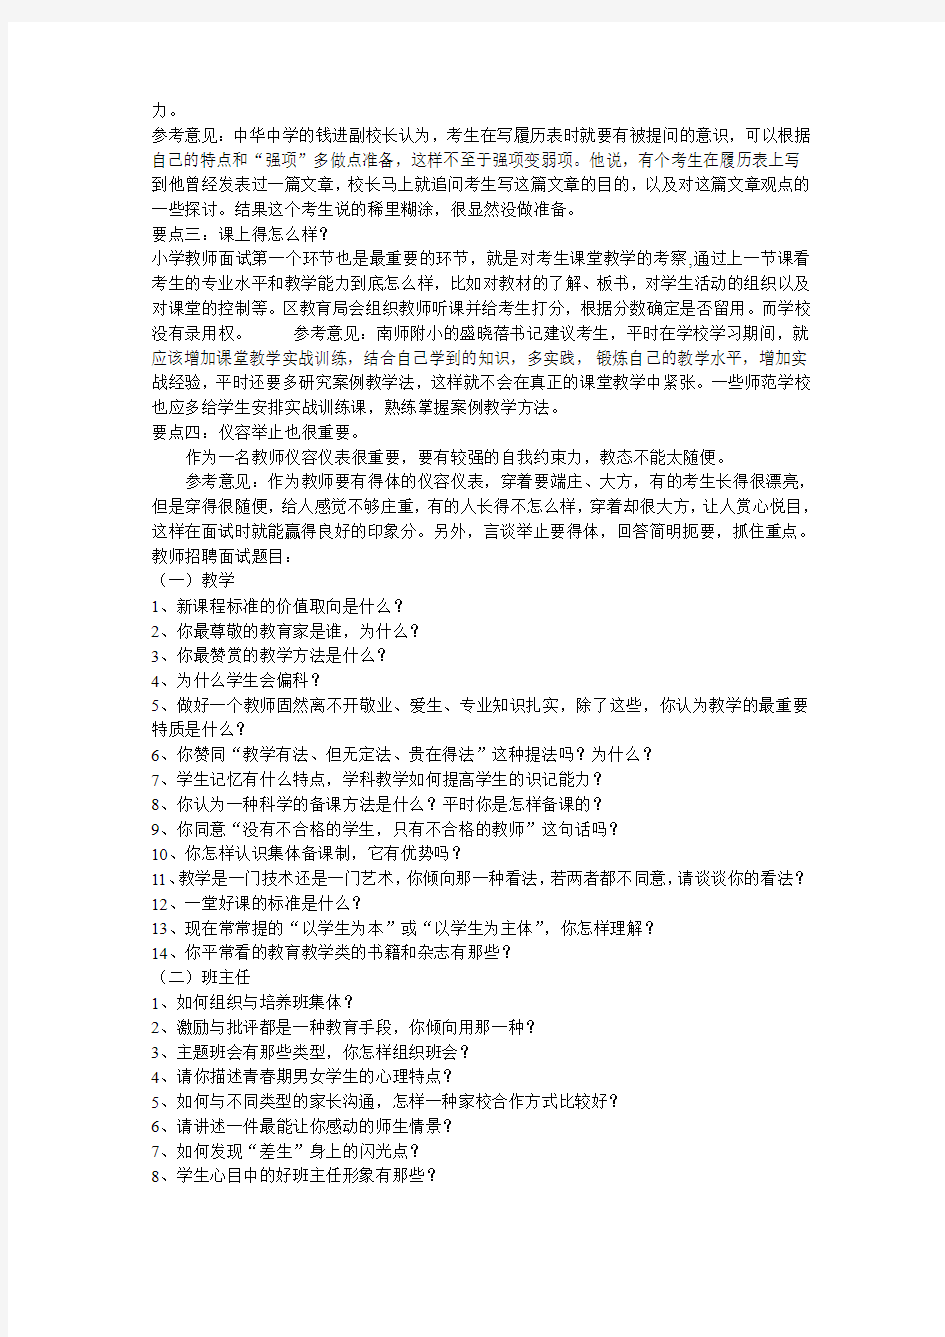 2011年南京六城区教师招考面试常见问题解答技巧解析